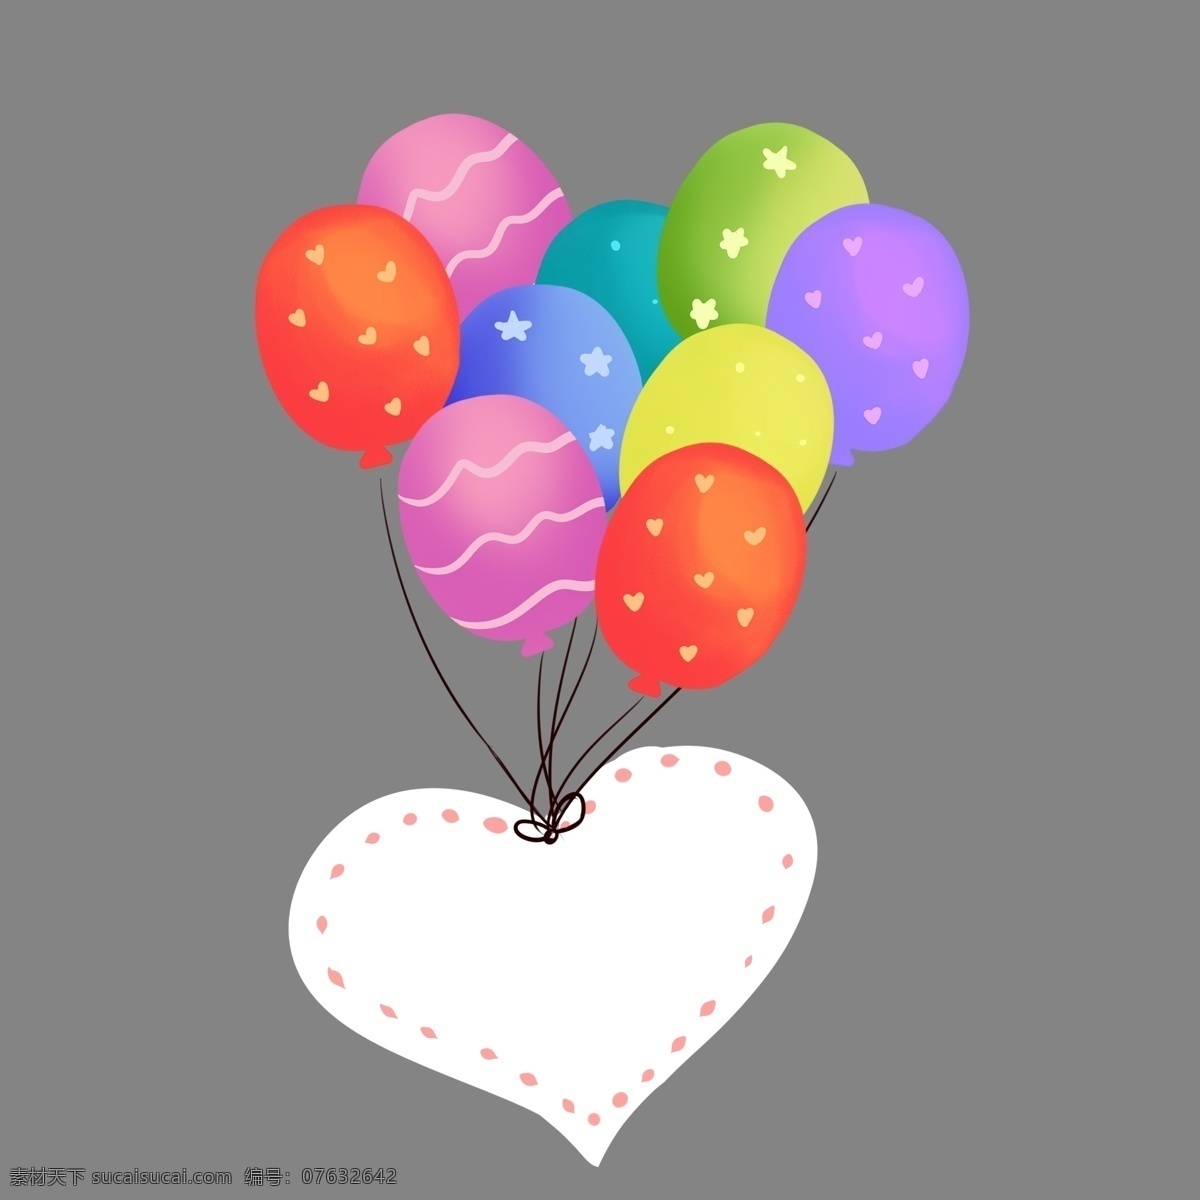 插 画风 彩色 气球 爱心 便签 气球串 气球束 背景装饰 手绘 卡通 插画 可爱 浪漫 情人节